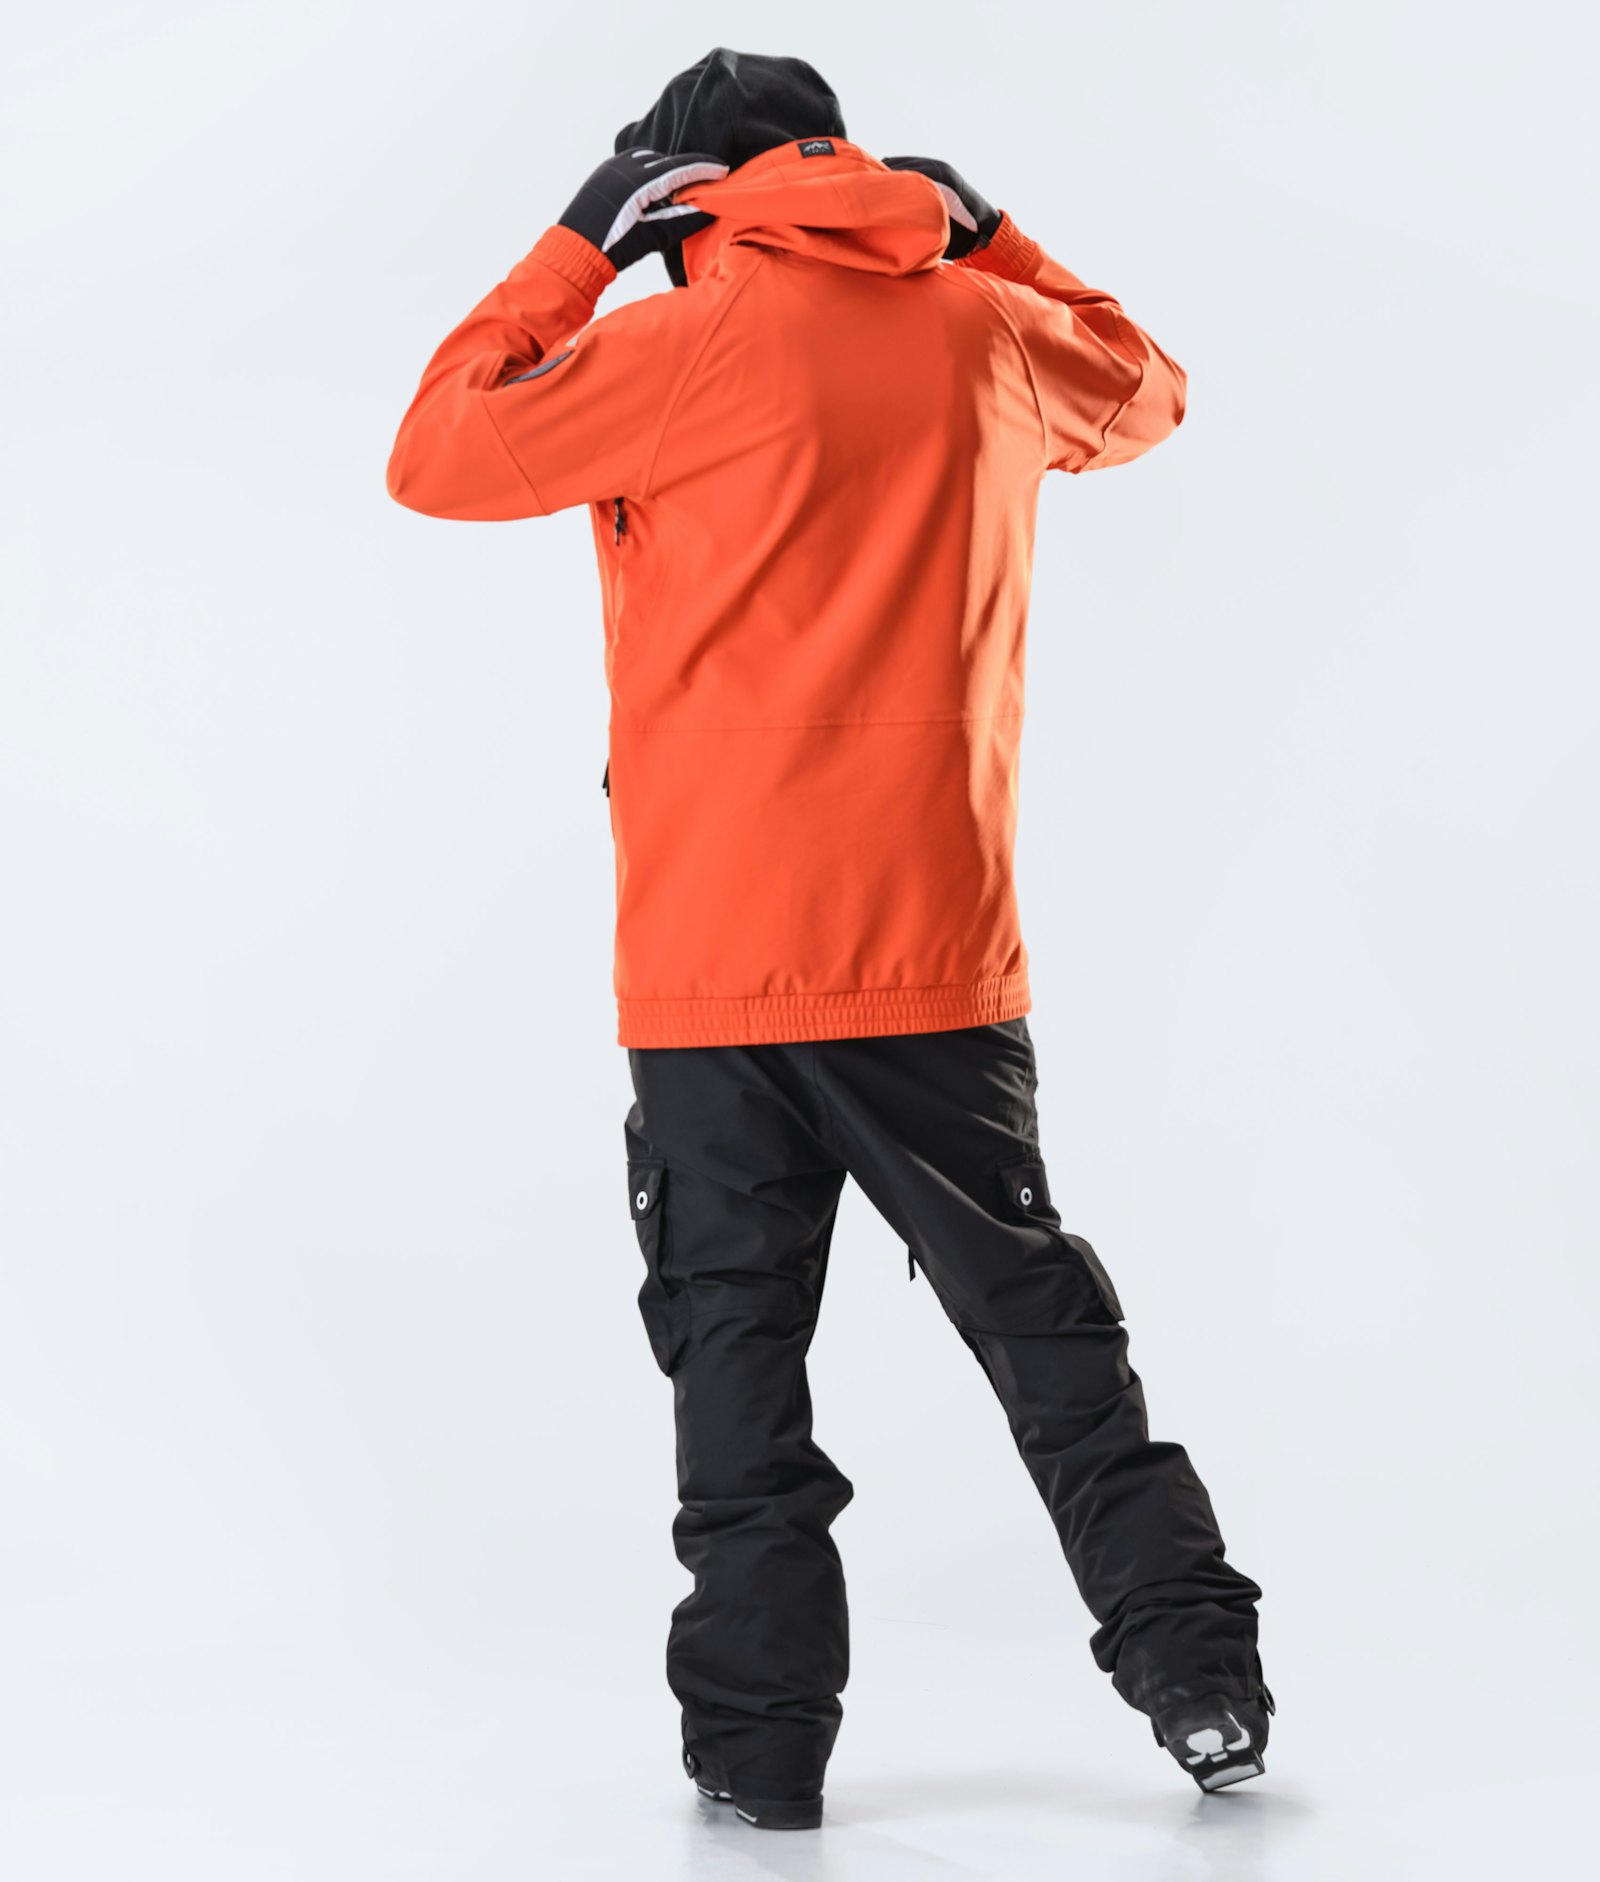 Dope Rogue Ski Jacket Men Orange